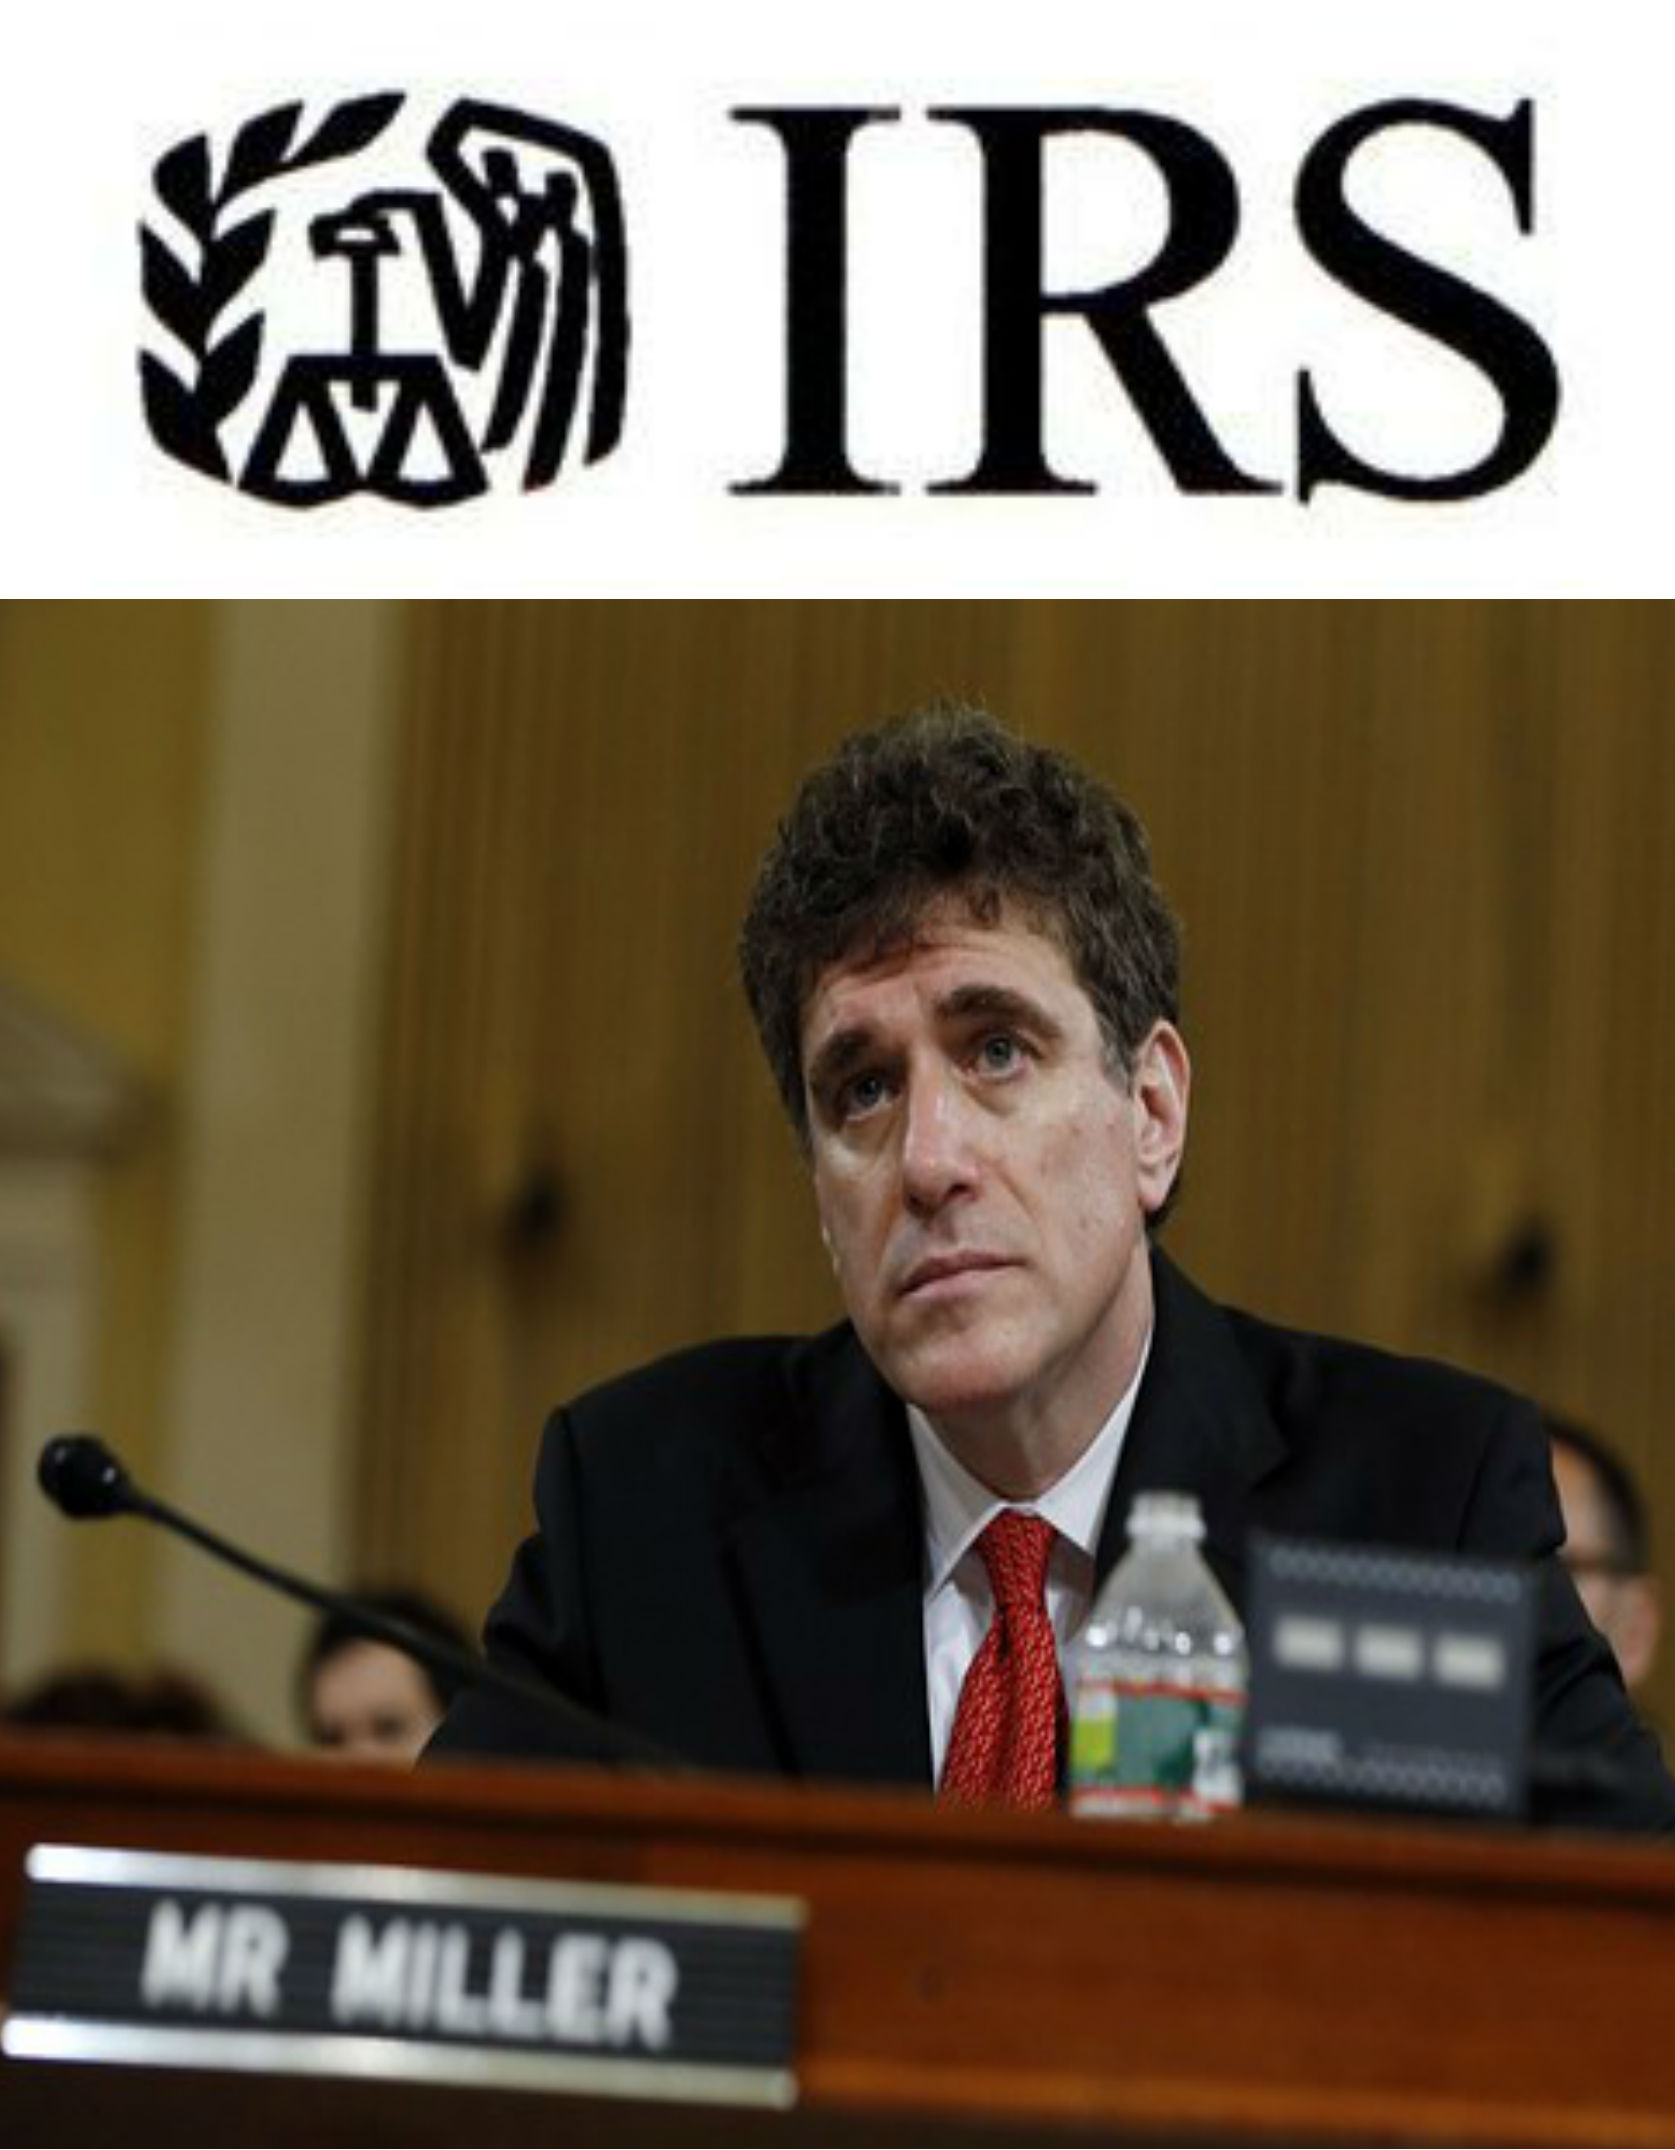 IRS Steven Miller